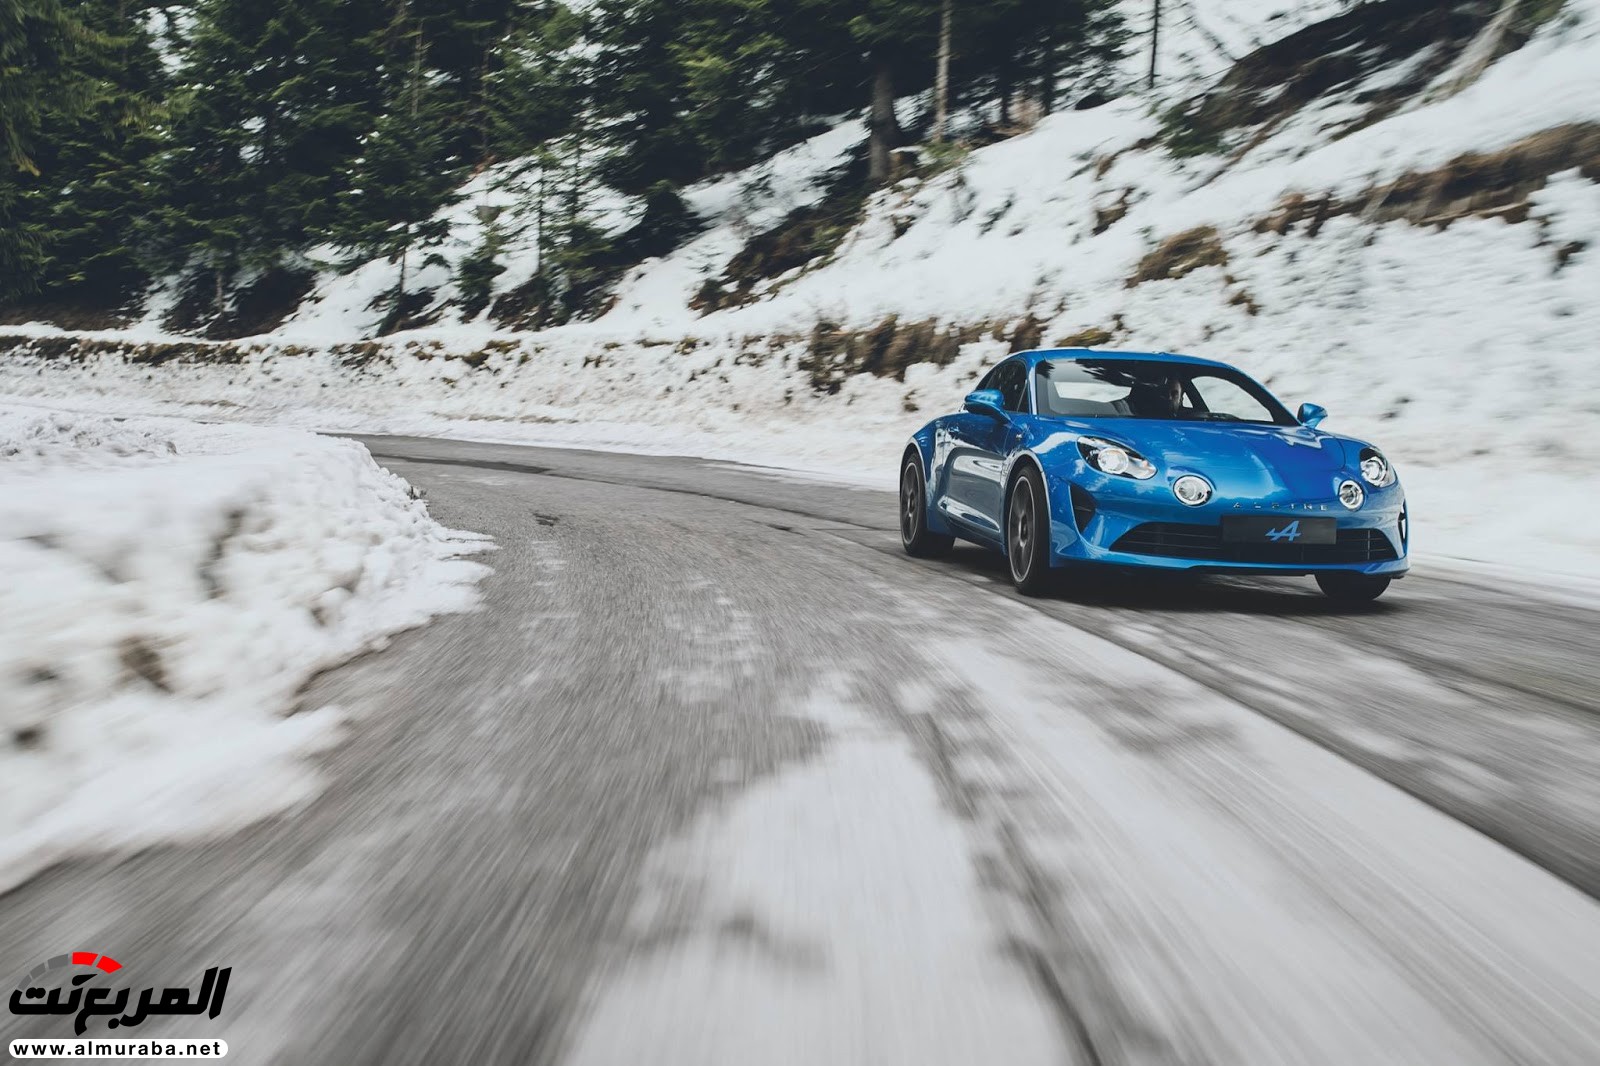 "صور مسربة" تكشف عن عودة "ألباين" بالسيارة الرياضية A110 الجديدة كليا 2018 Alpine 45